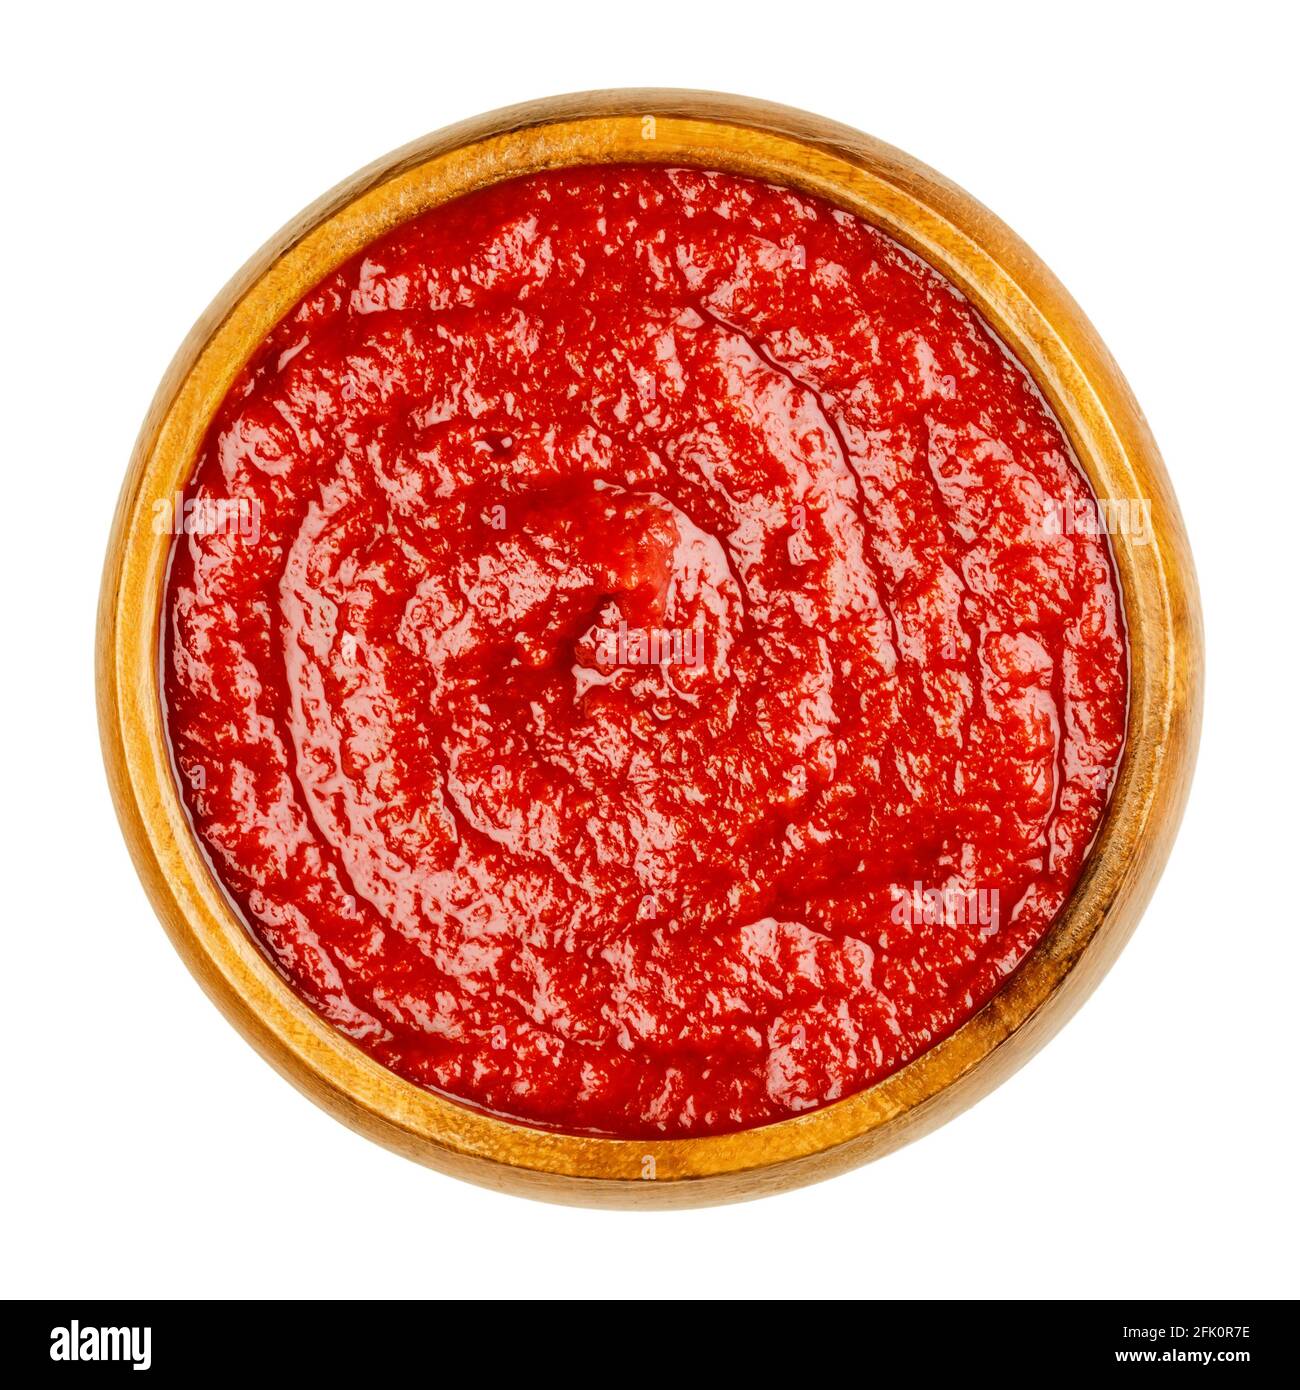 Ketchup di pomodoro fatto in casa in una ciotola di legno. Condimento da tavola rosso dolce e piccante, composto da pasta di pomodoro, zucchero, aceto e condimenti. Foto Stock